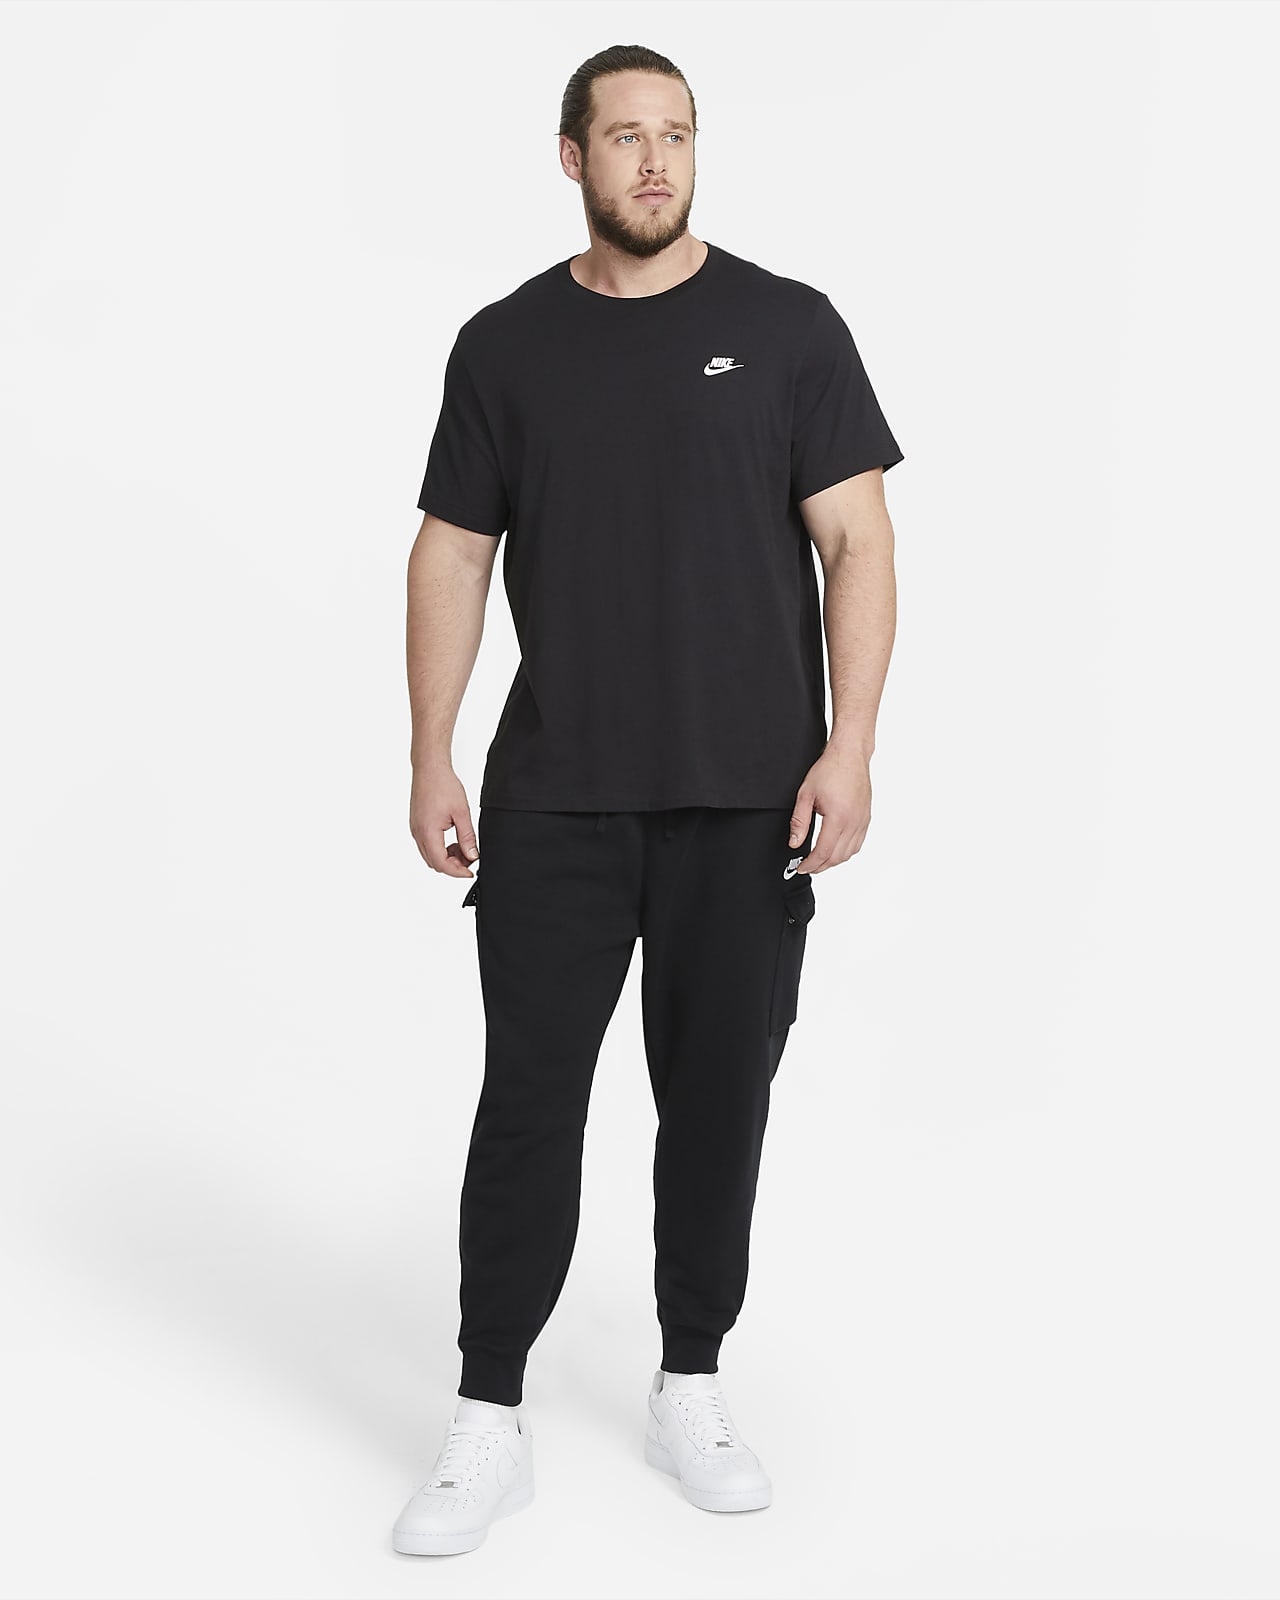 Nike公式 ナイキ スポーツウェア クラブ メンズ Tシャツ オンラインストア 通販サイト